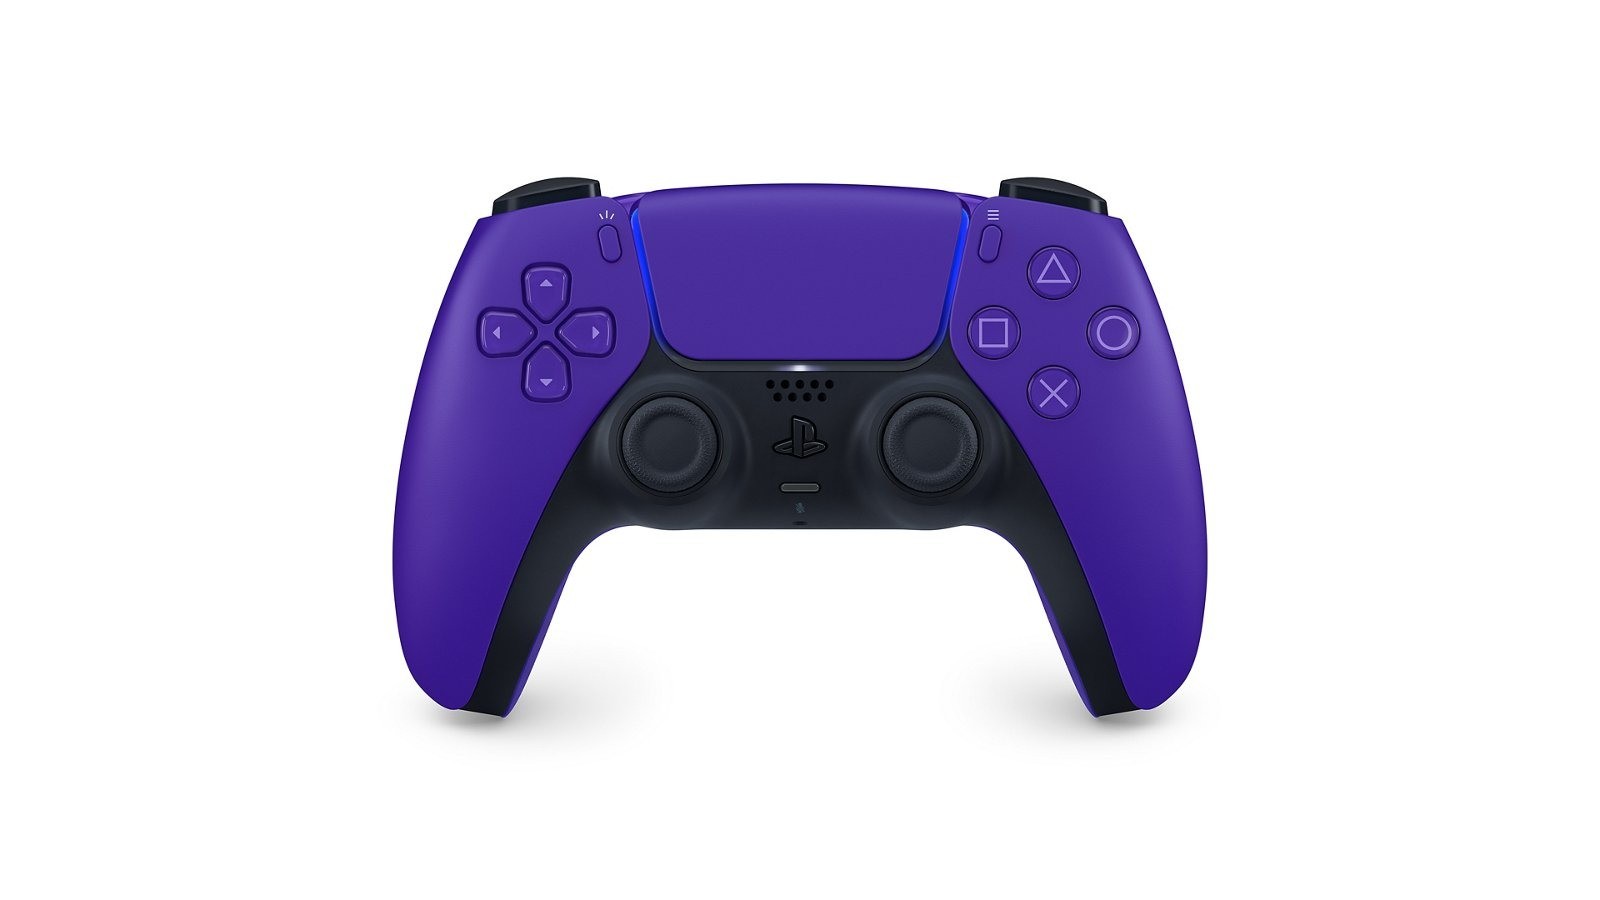 全新銀河系色彩配色 PS5 主機護蓋「星光藍」「銀河紫」「星幻粉」6 月在台上市